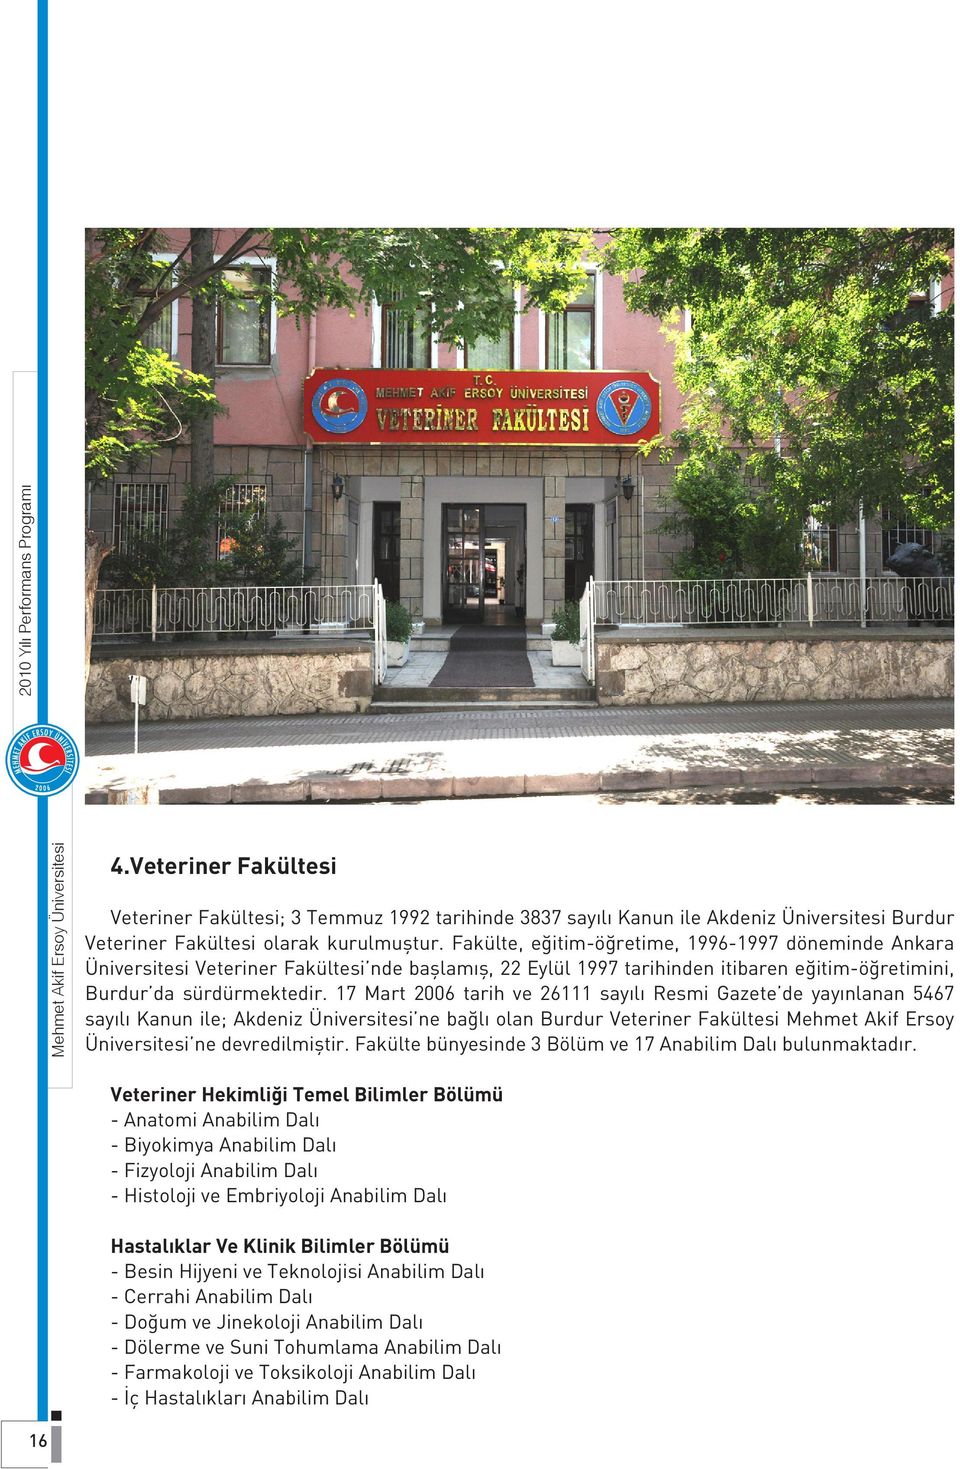 17 Mart 2006 tarih ve 26111 sayılı Resmi Gazete de yayınlanan 5467 sayılı Kanun ile; Akdeniz Üniversitesi ne bağlı olan Burdur Veteriner Fakültesi Mehmet Akif Ersoy Üniversitesi ne devredilmiştir.